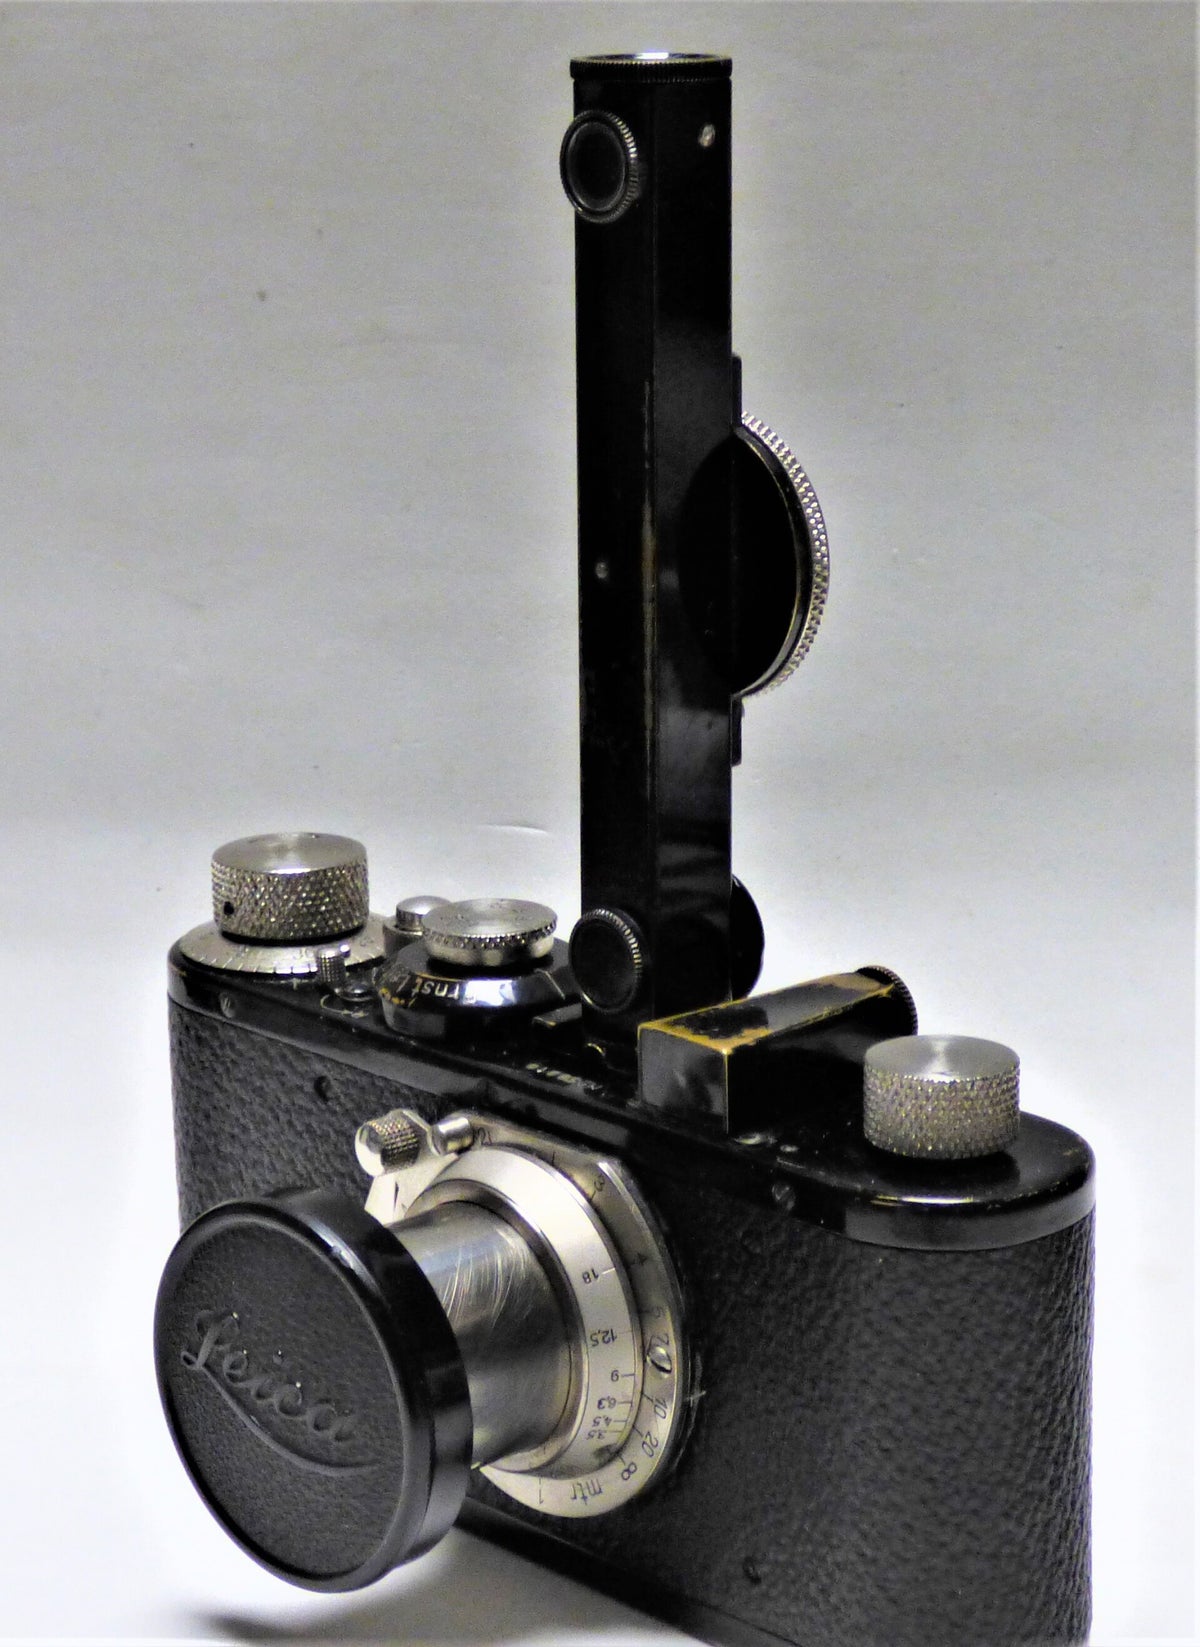 Acheter du matériel photographique ancien à vendre Paris, France | Équipement photo antique | Accessoires pour appareils photo vintage - Jay & Jay'S